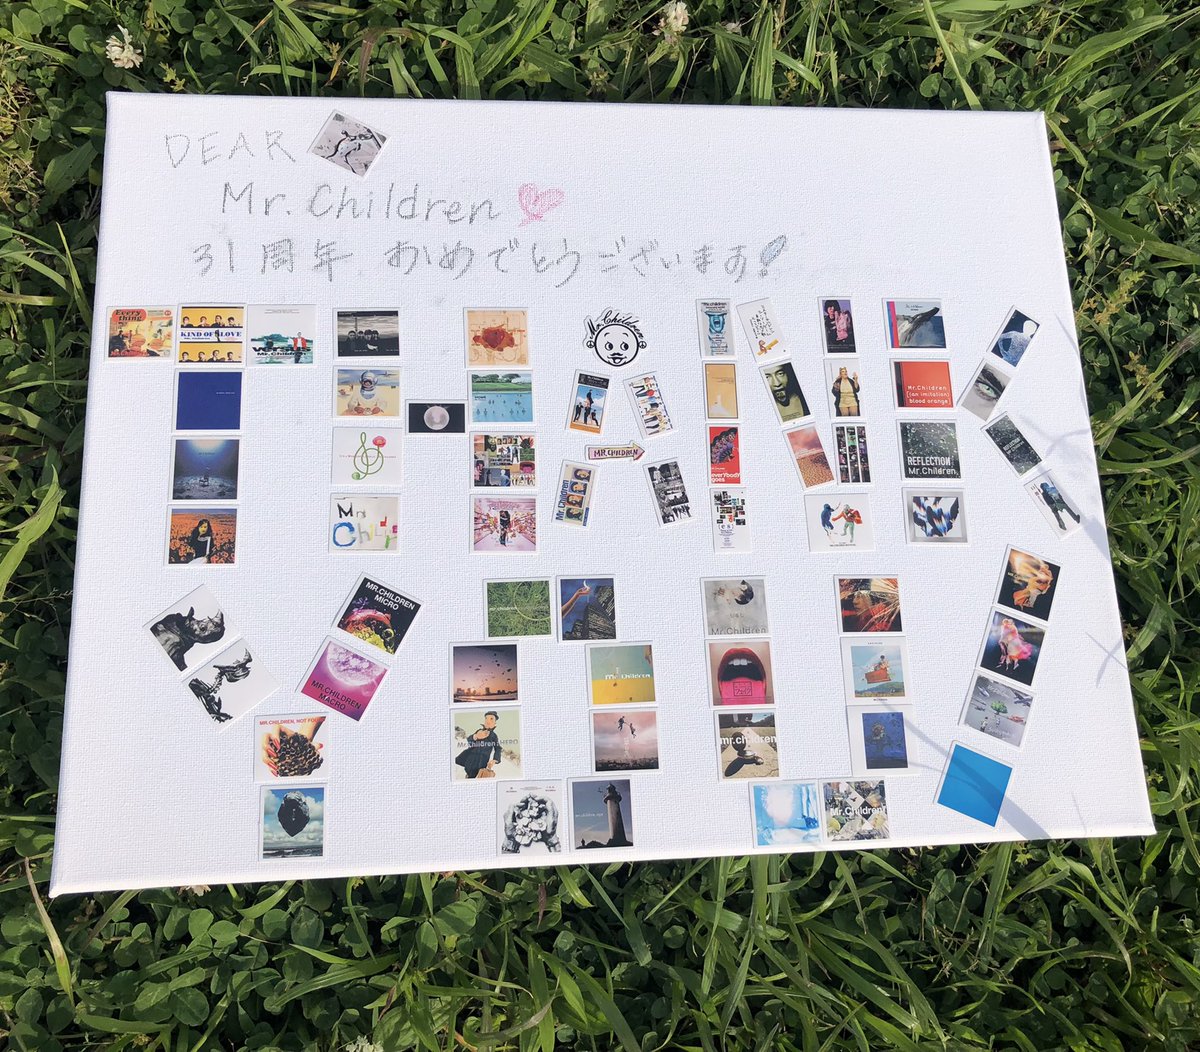 Mr.Children様
31周年おめでとうございます❣️

こんなにもたくさんの素晴らしい音楽💘に、Mr.Children💖に、ありがとうの気持ちでいっぱいです🍀

またライブで逢える日を楽しみにしています😊
大好きです。

#MrChildren
#MrChildren31thAnniversary